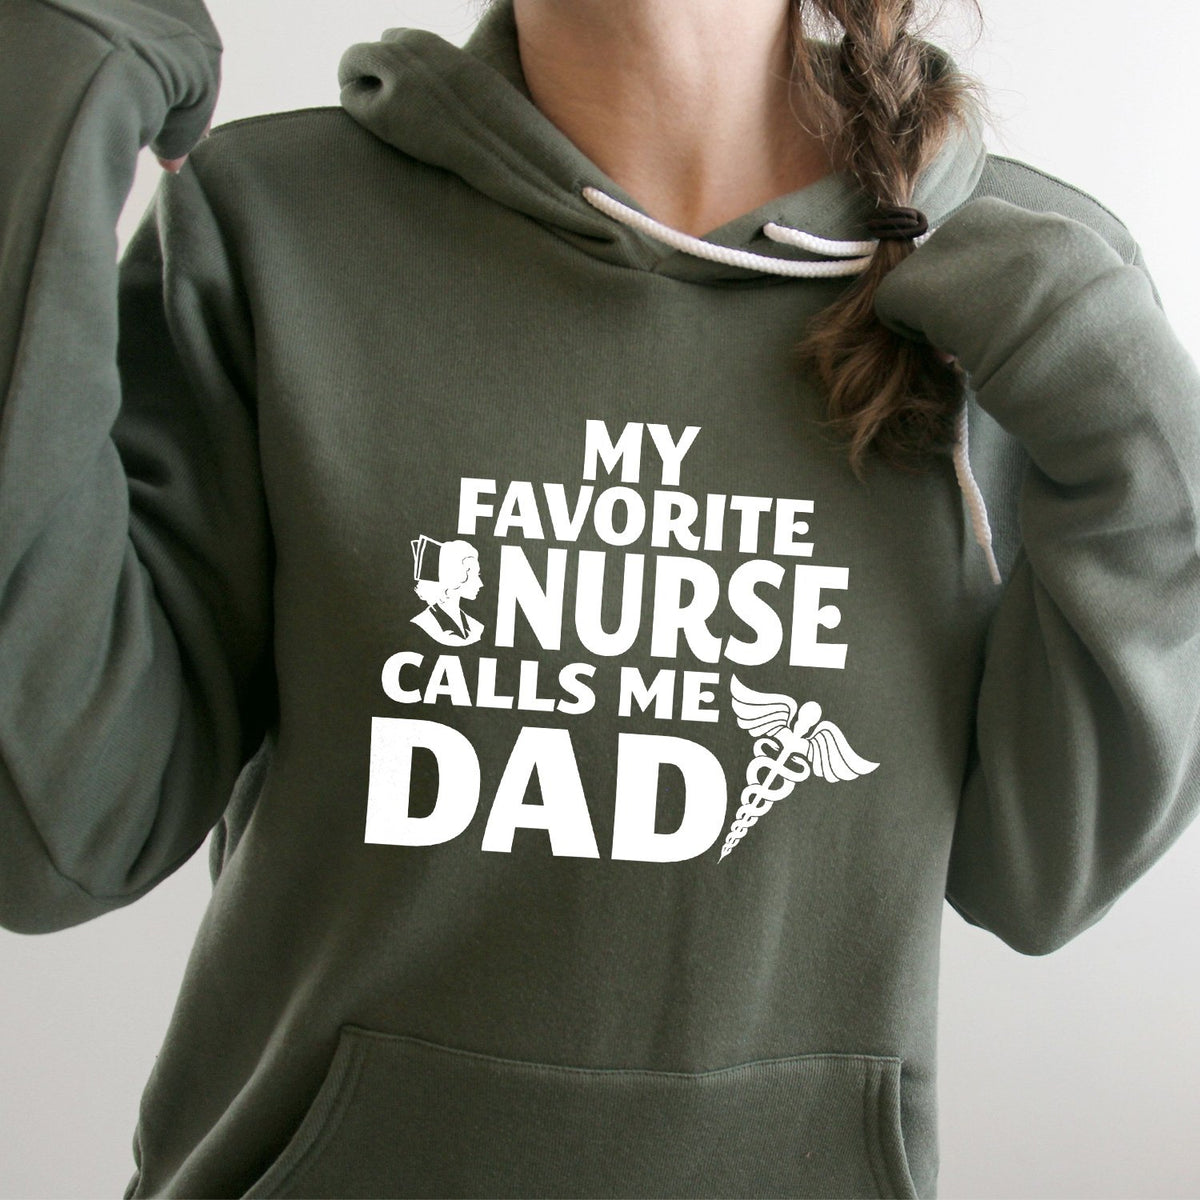 My Favorite Nurse Calls Me Dad - Hoodie Sweatshirt